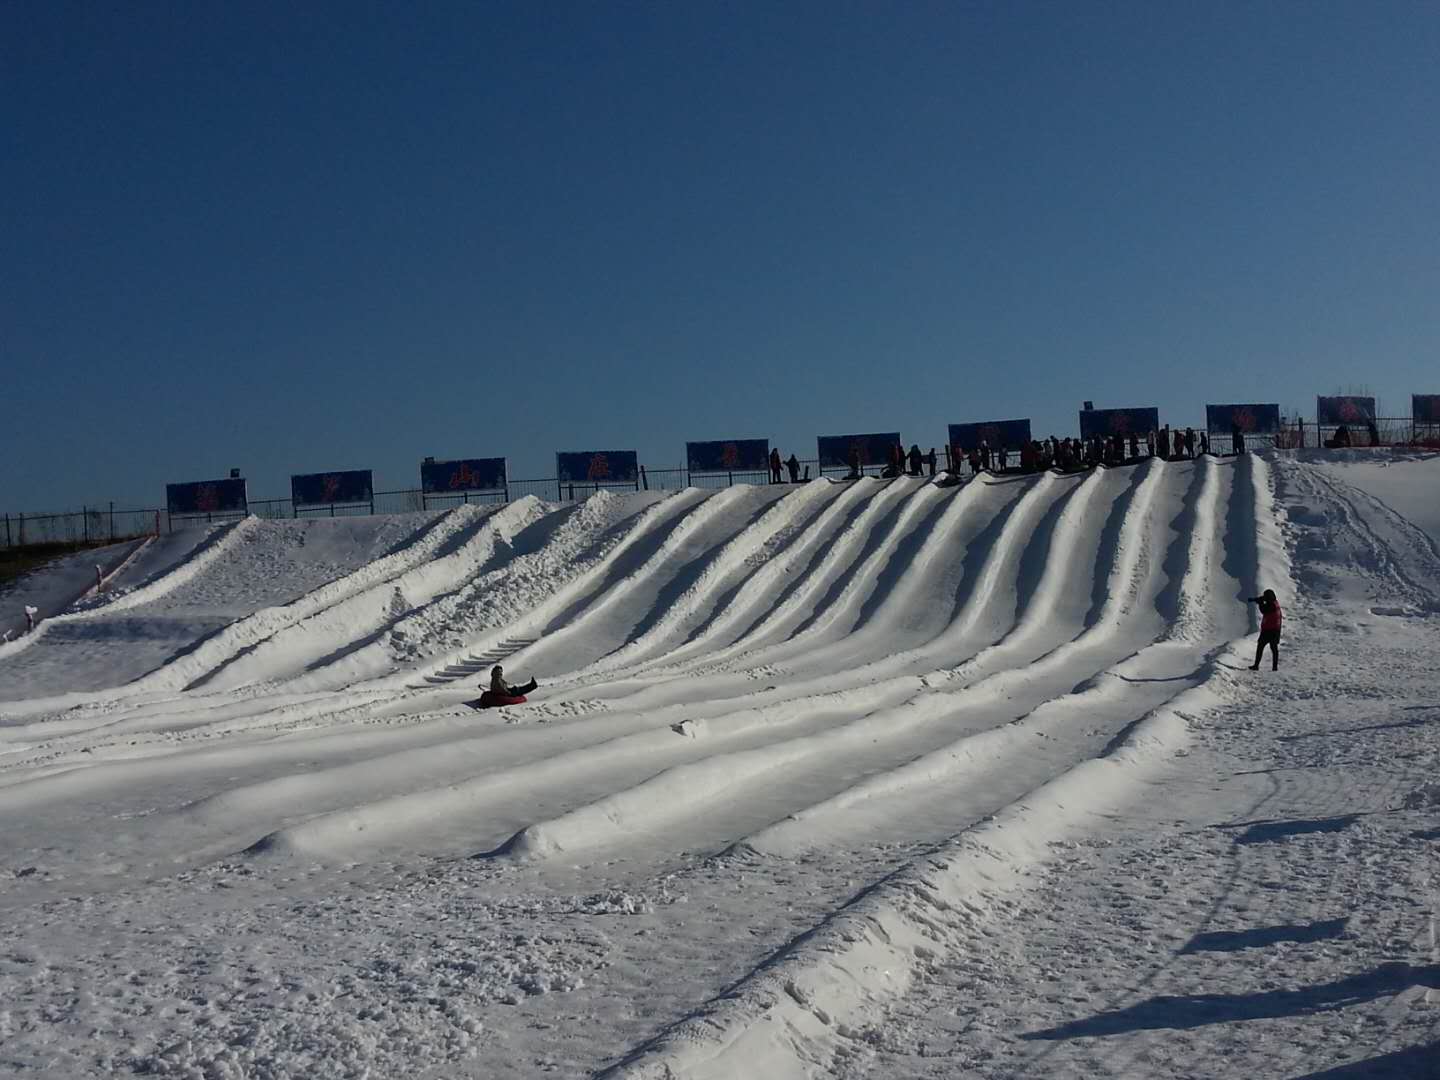 涿州滑雪场图片